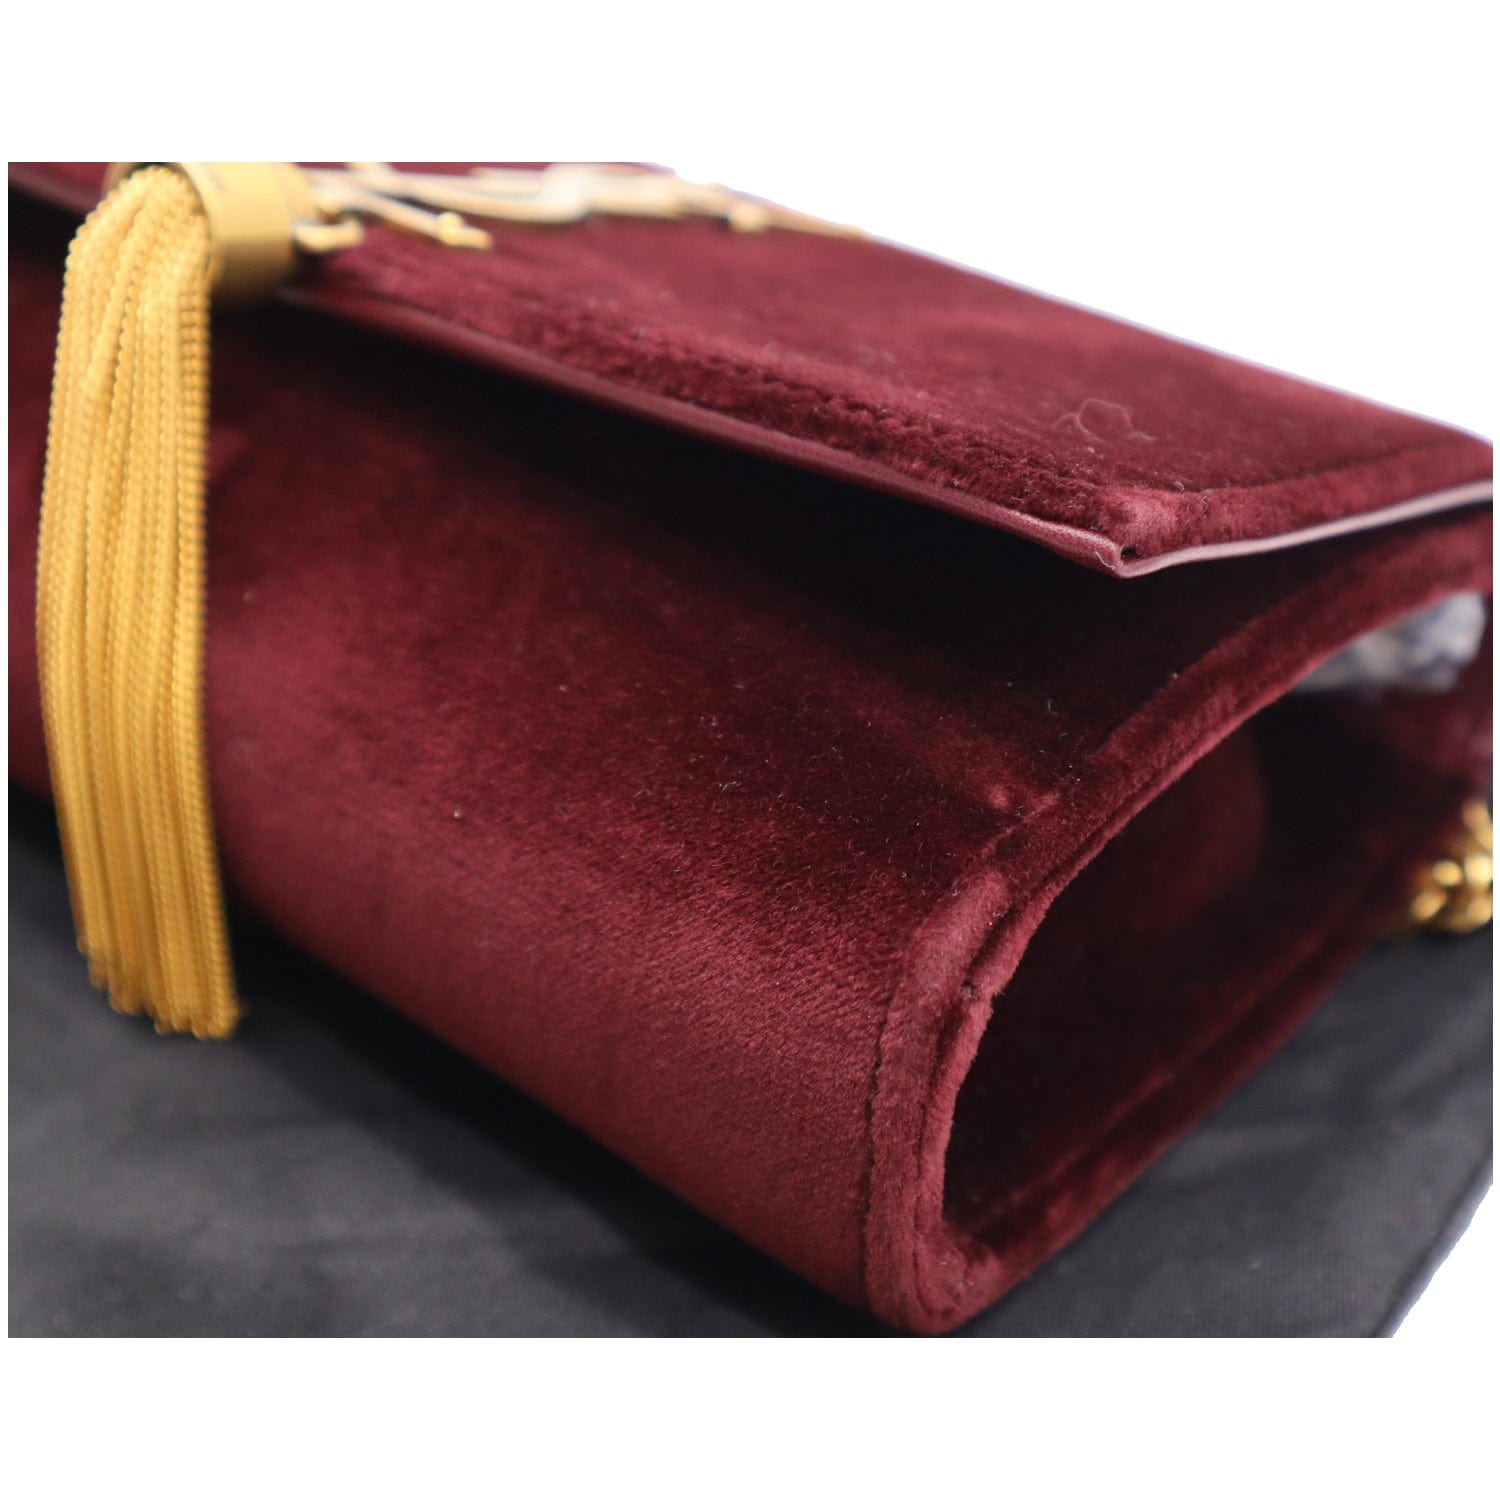 Burgundy Red Velvet Medium Classic Double Flap Bag